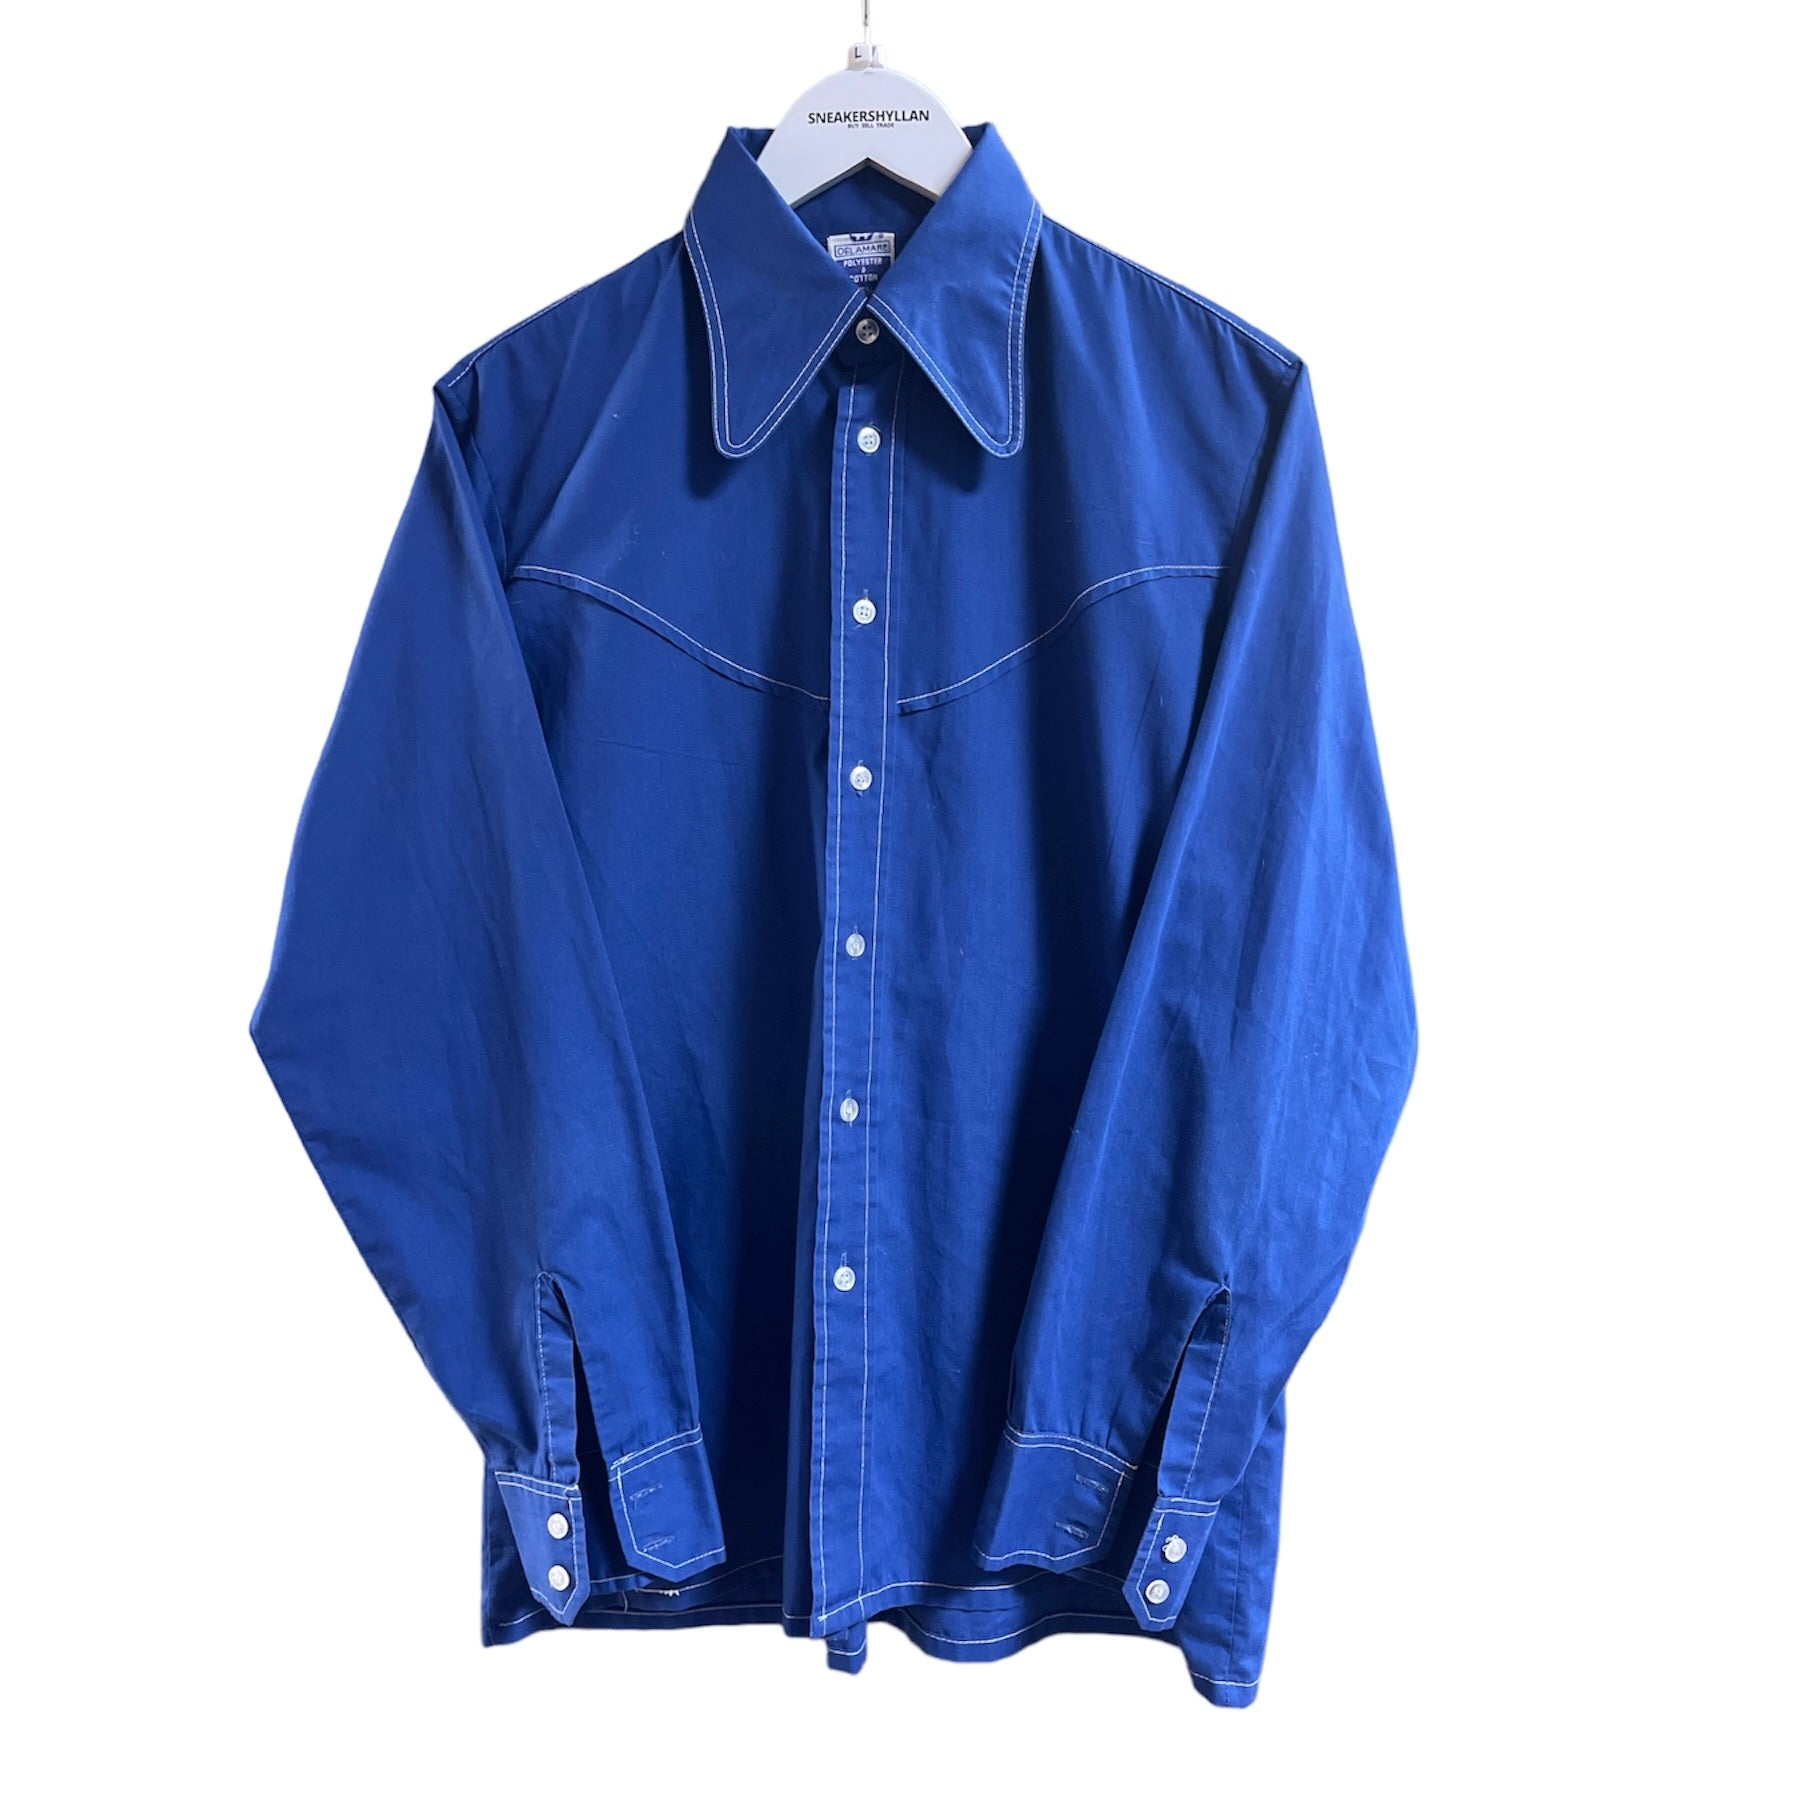 Vintage Delamare Blue Shirt